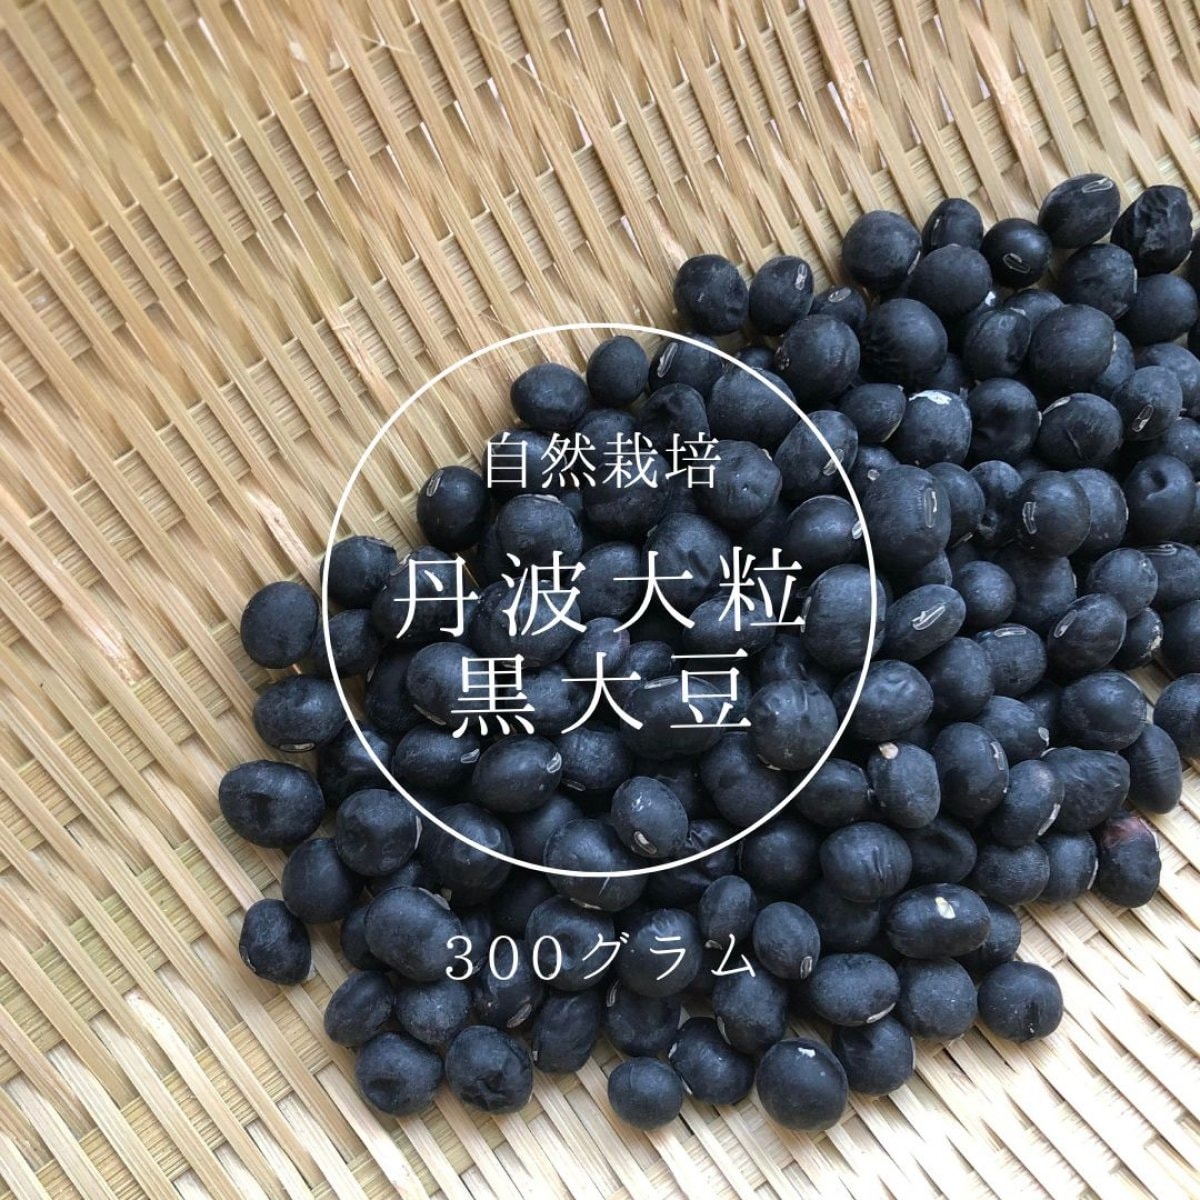 【送料無料】丹波大粒黒大豆 自然栽培 300グラム